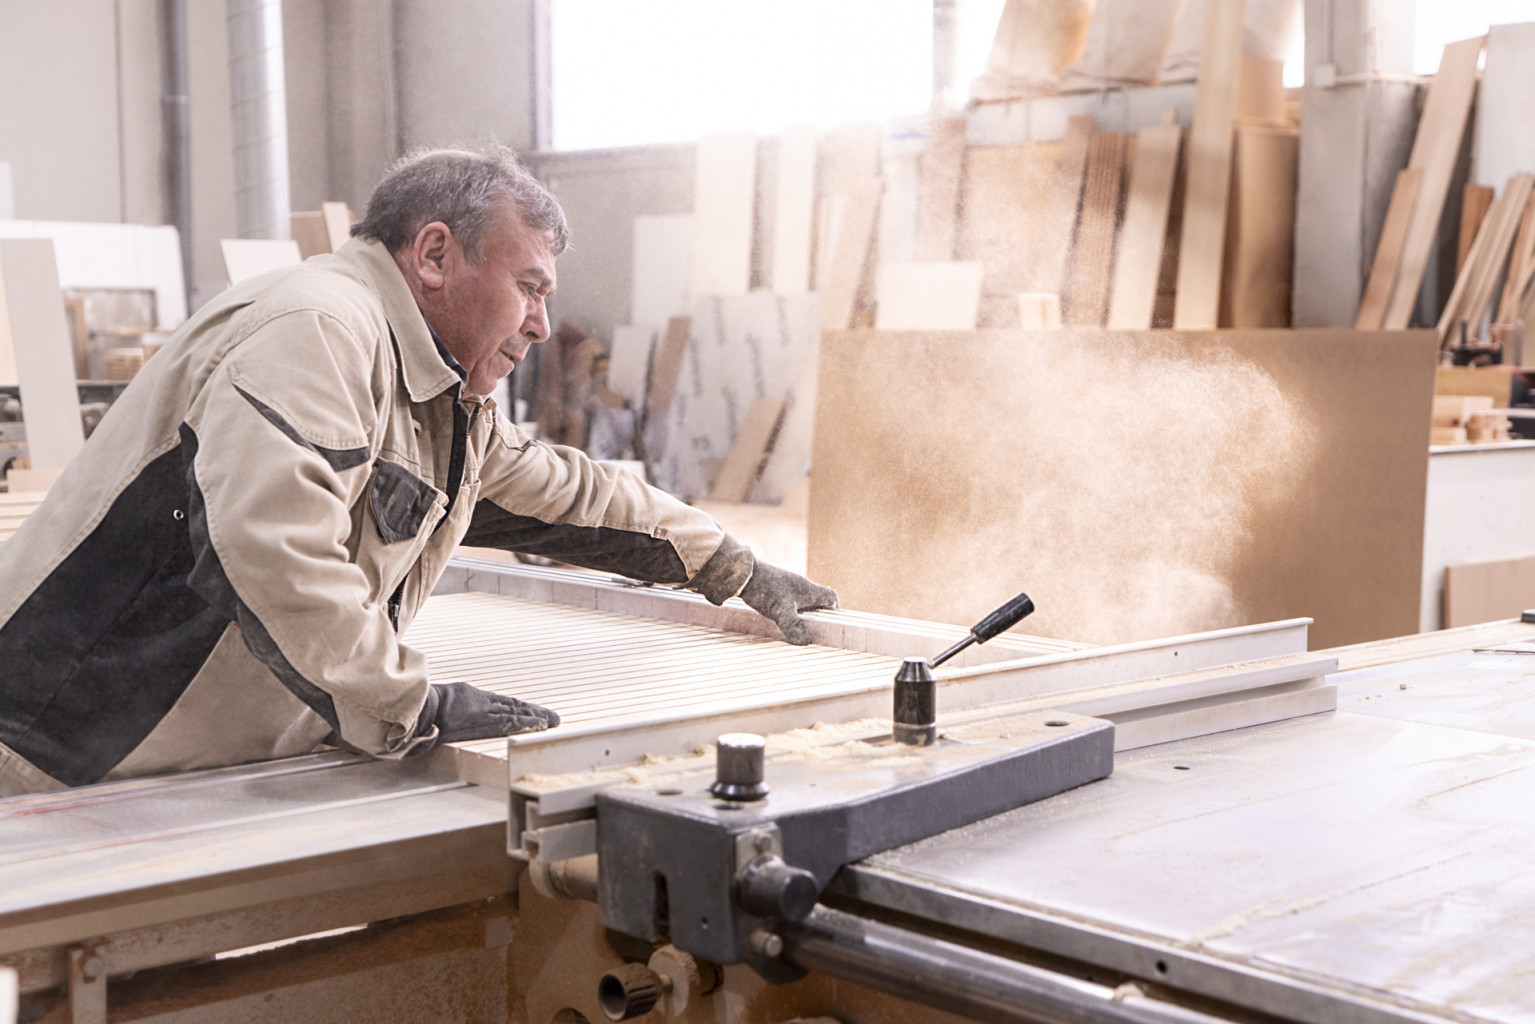 Taller de carpinteria en granada corte de madera con sierra fabrilis estudio carpinteria online